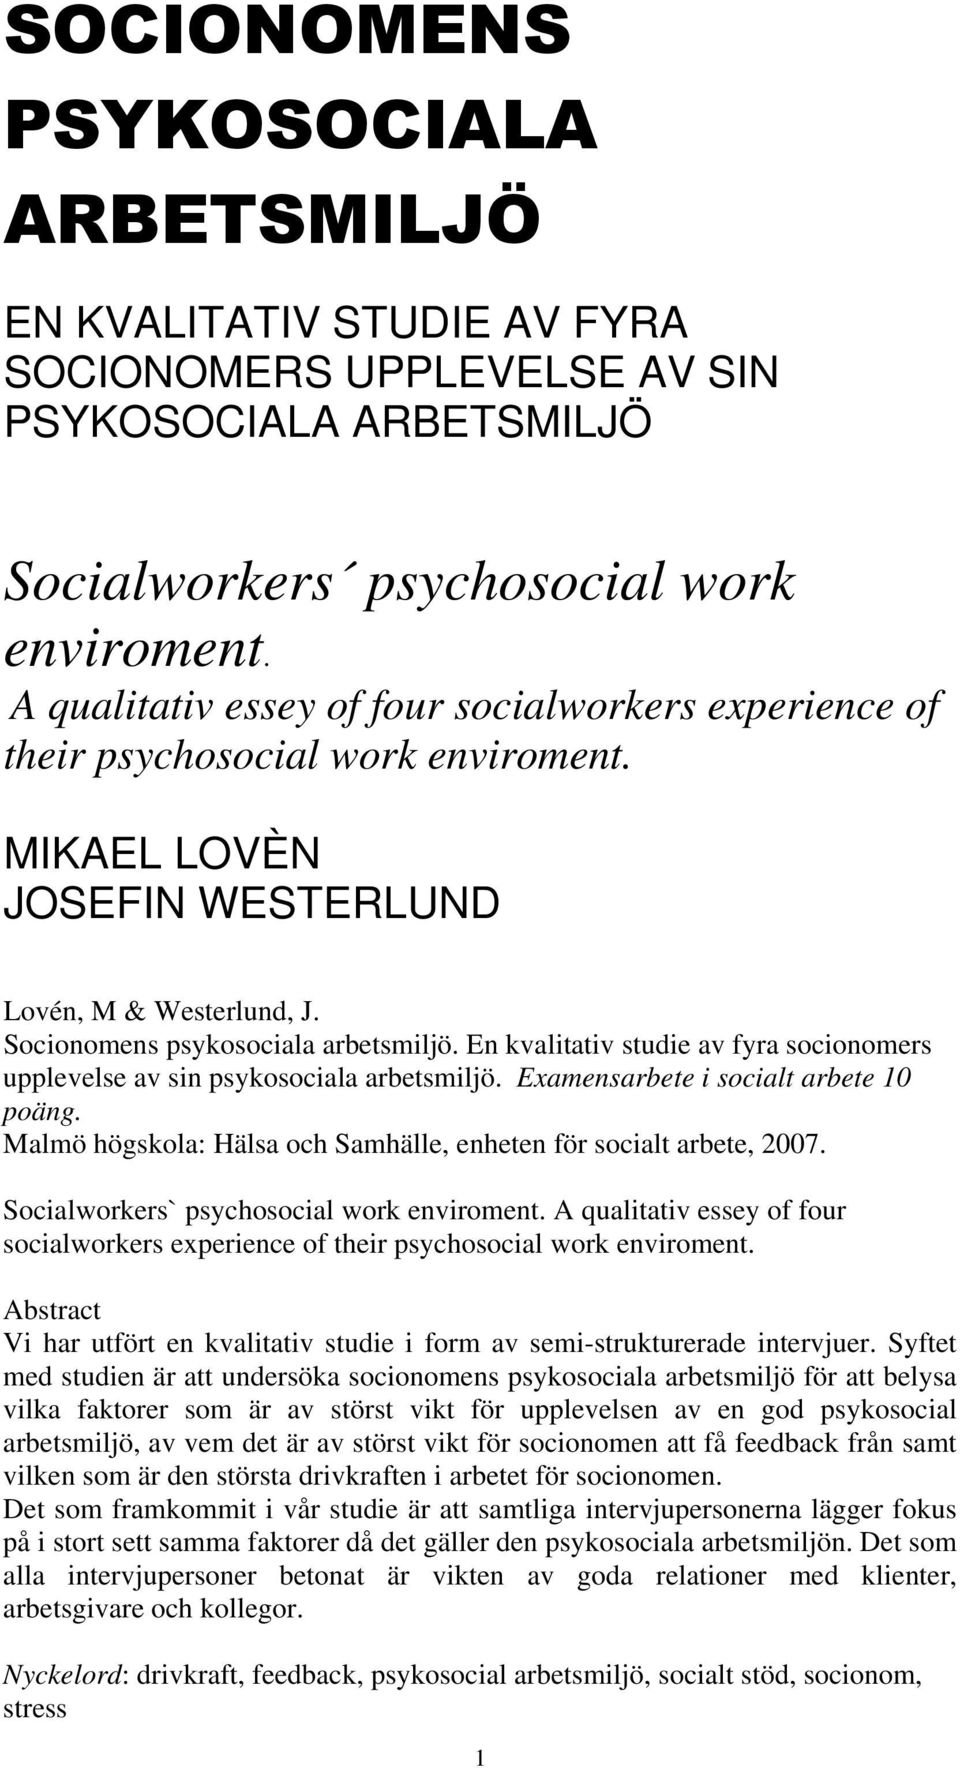 En kvalitativ studie av fyra socionomers upplevelse av sin psykosociala arbetsmiljö. Examensarbete i socialt arbete 10 poäng. Malmö högskola: Hälsa och Samhälle, enheten för socialt arbete, 2007.